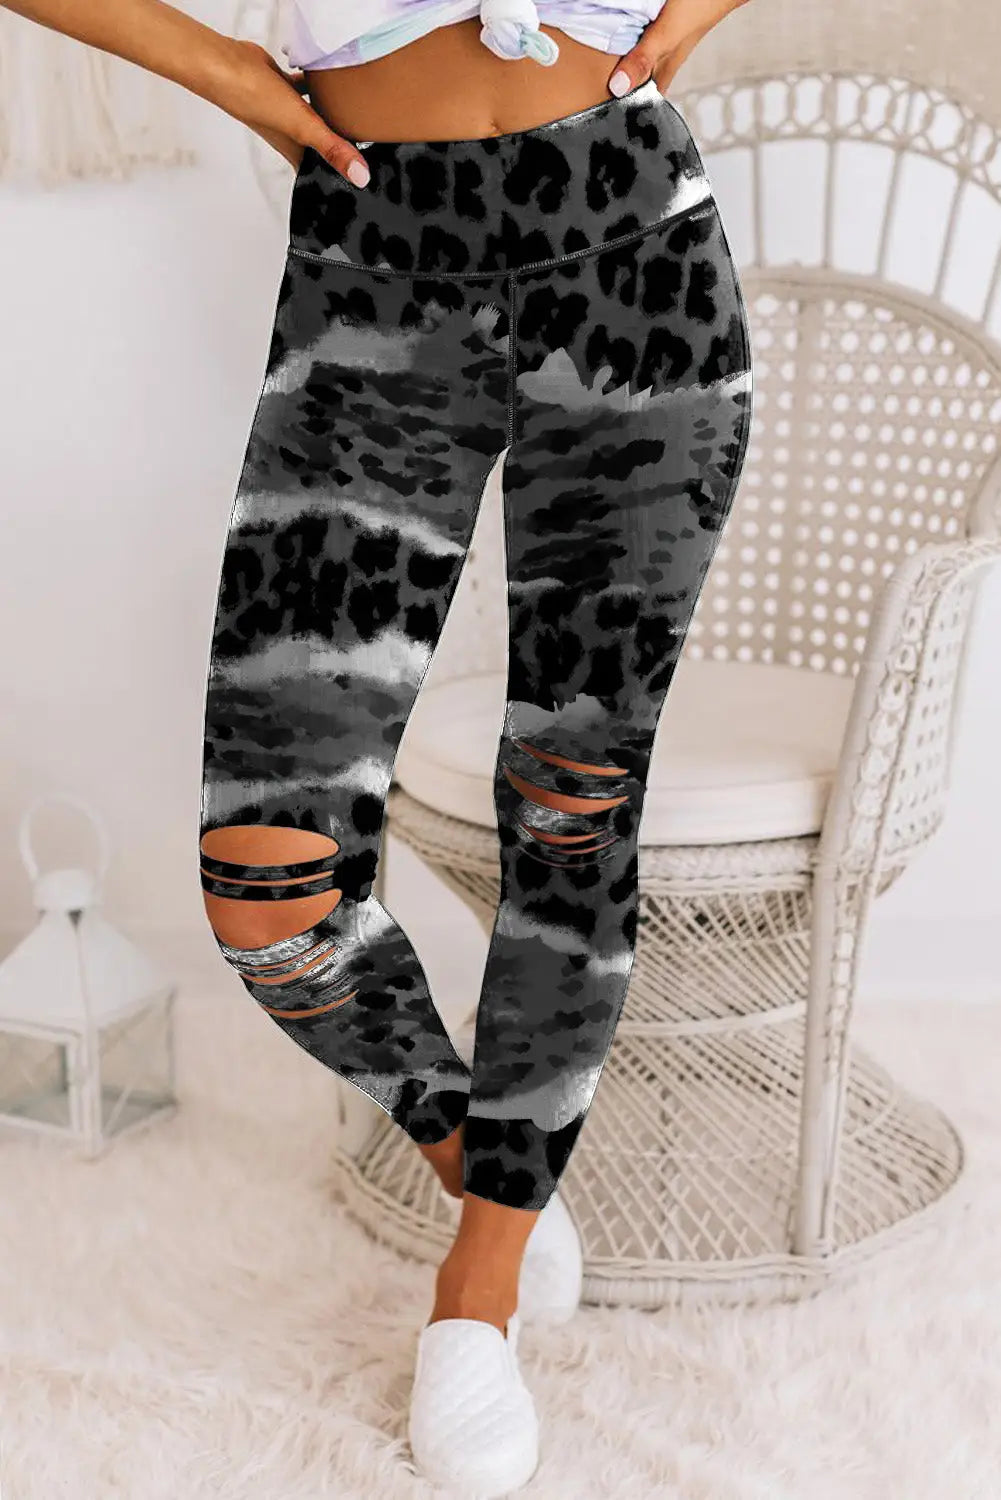 Leopard animal print ripped knee leggings - s / 85% polyester + 15% elastane